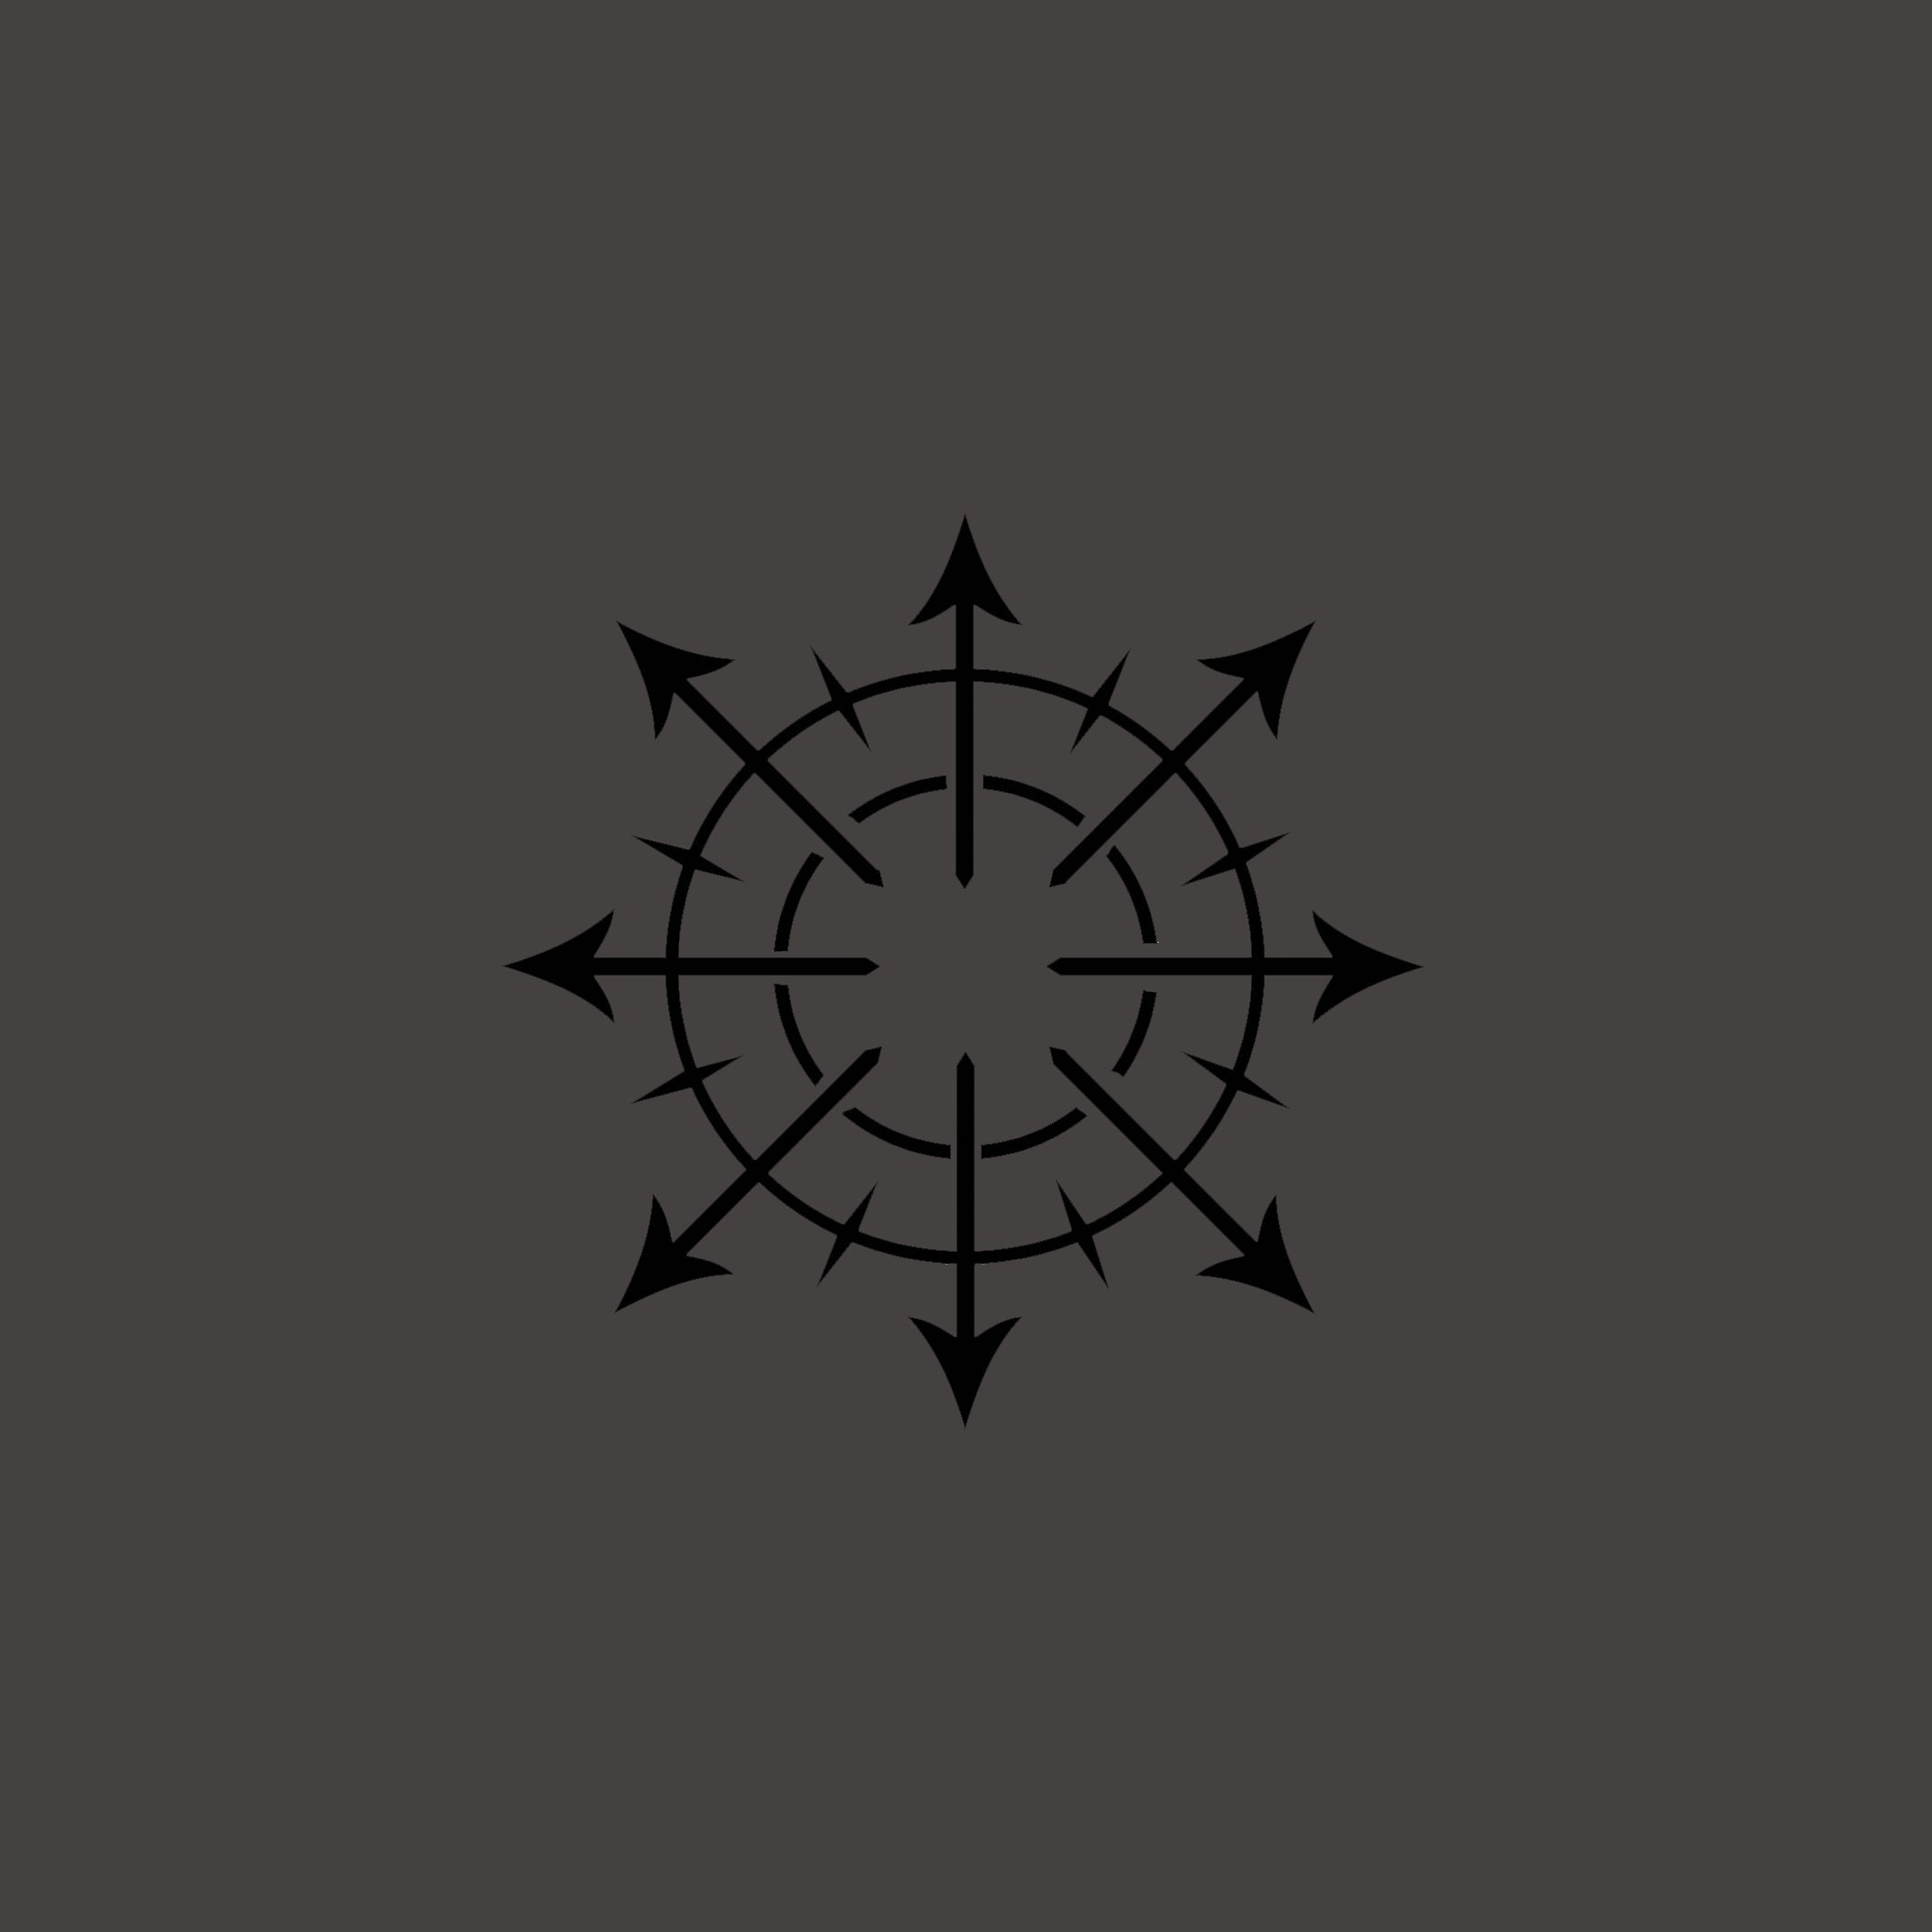 Caos simbolo dadi Vassoio-nero grigio quadrato in legno-D&D DADI Vassoio-Warhammer 